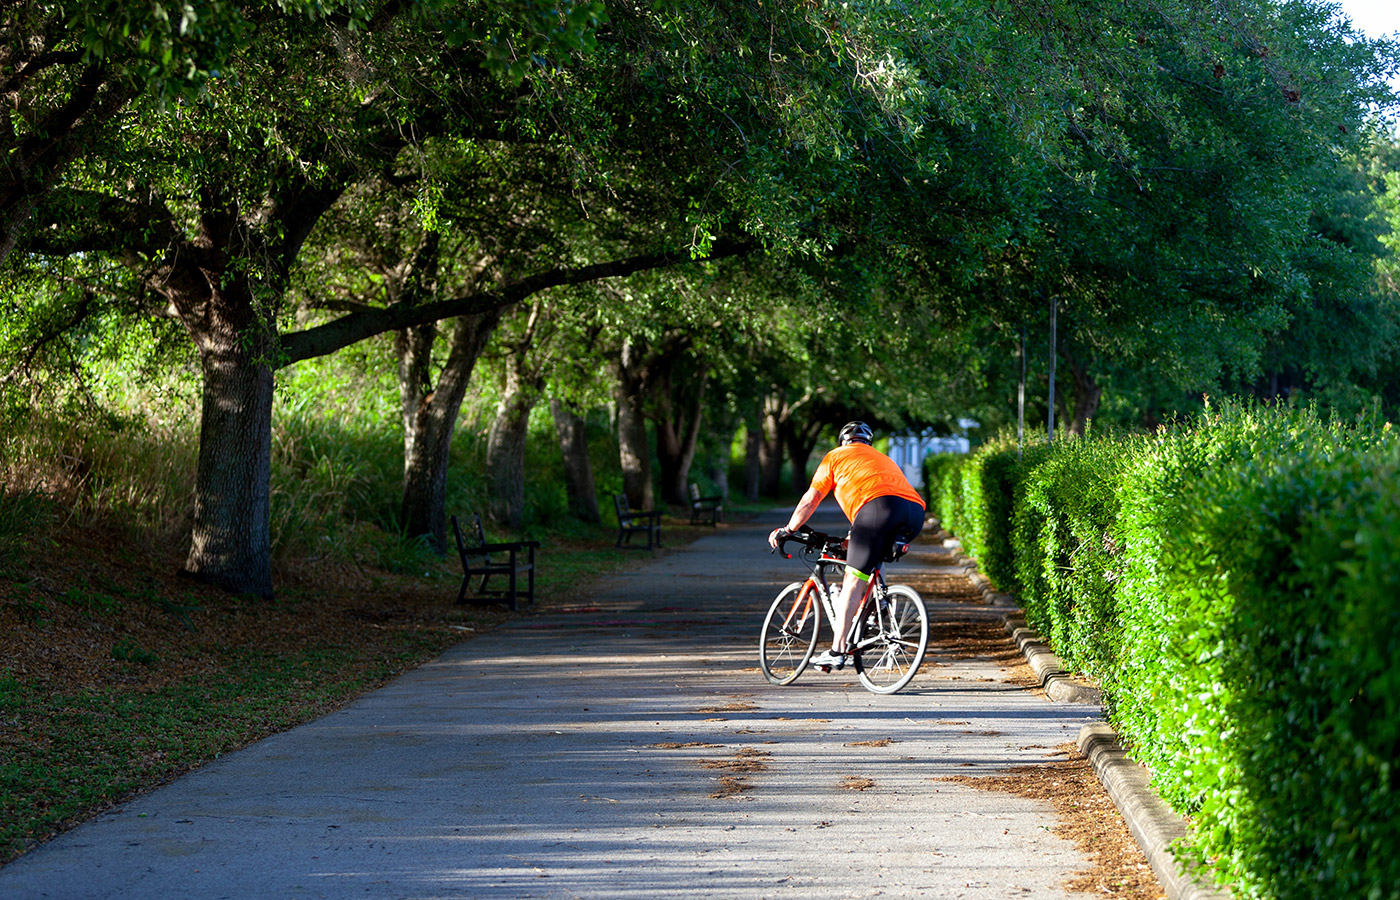 bike rider on pathway in park